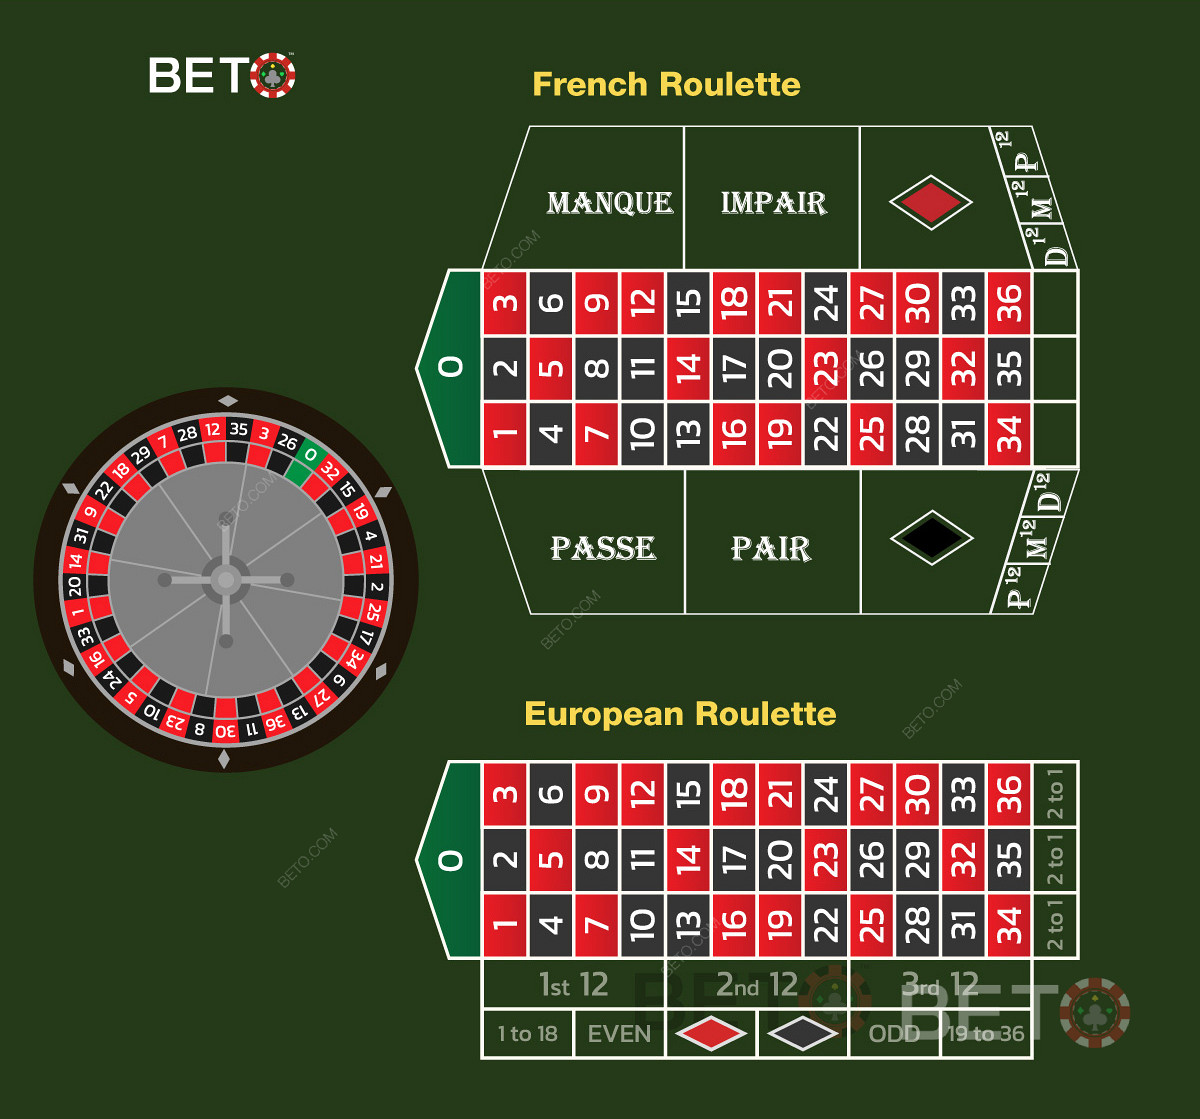 La Roulette française comparée à la Roulette européenne